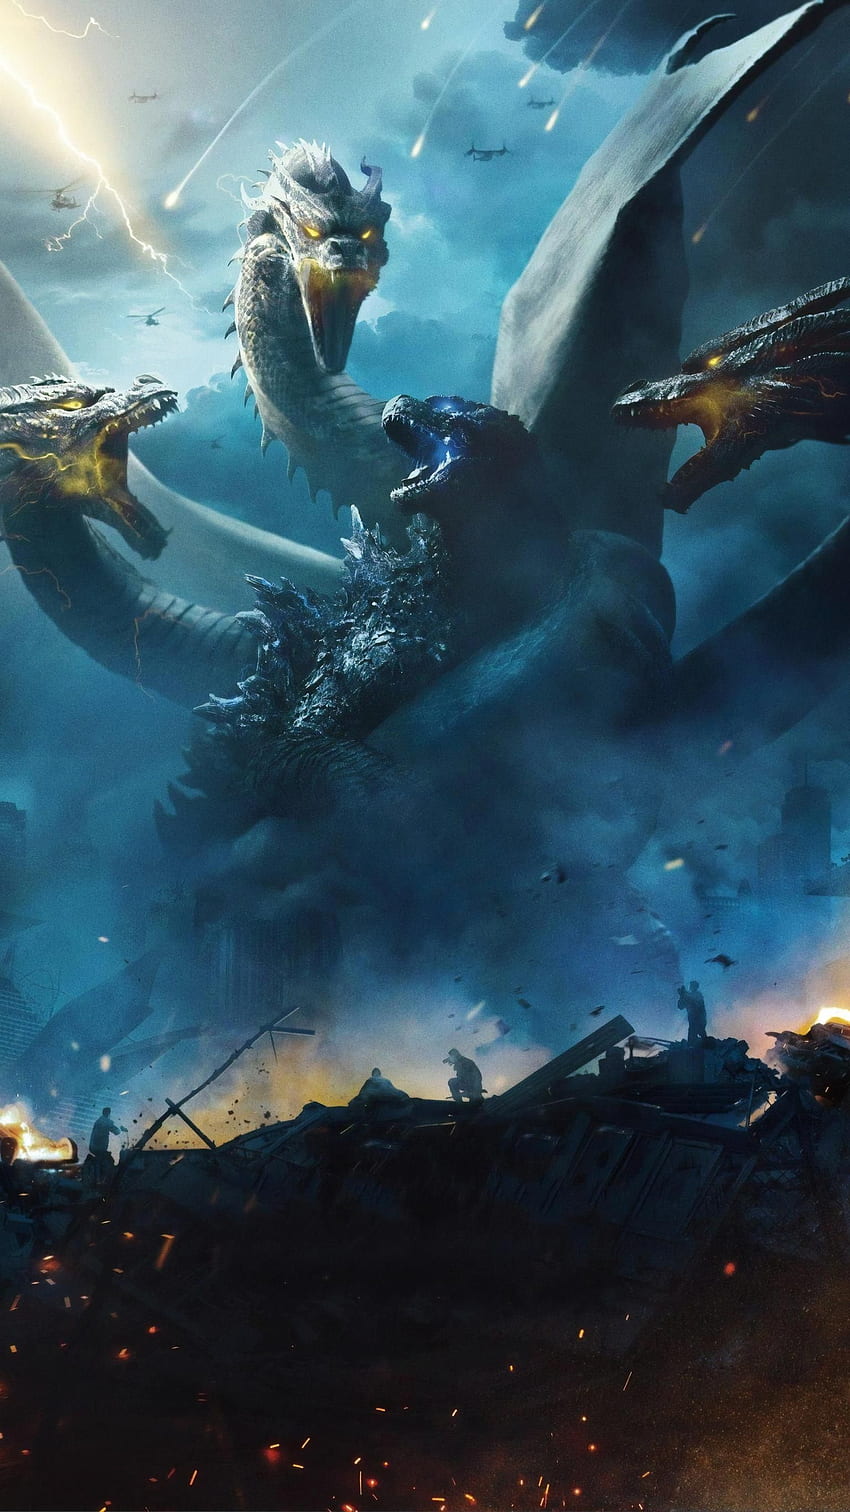 Godzilla: Rey de los monstruos (2019) Teléfono. Cinemanía. Godzilla, Godzilla vs king ghidorah, Todos los monstruos de godzilla fondo de pantalla del teléfono